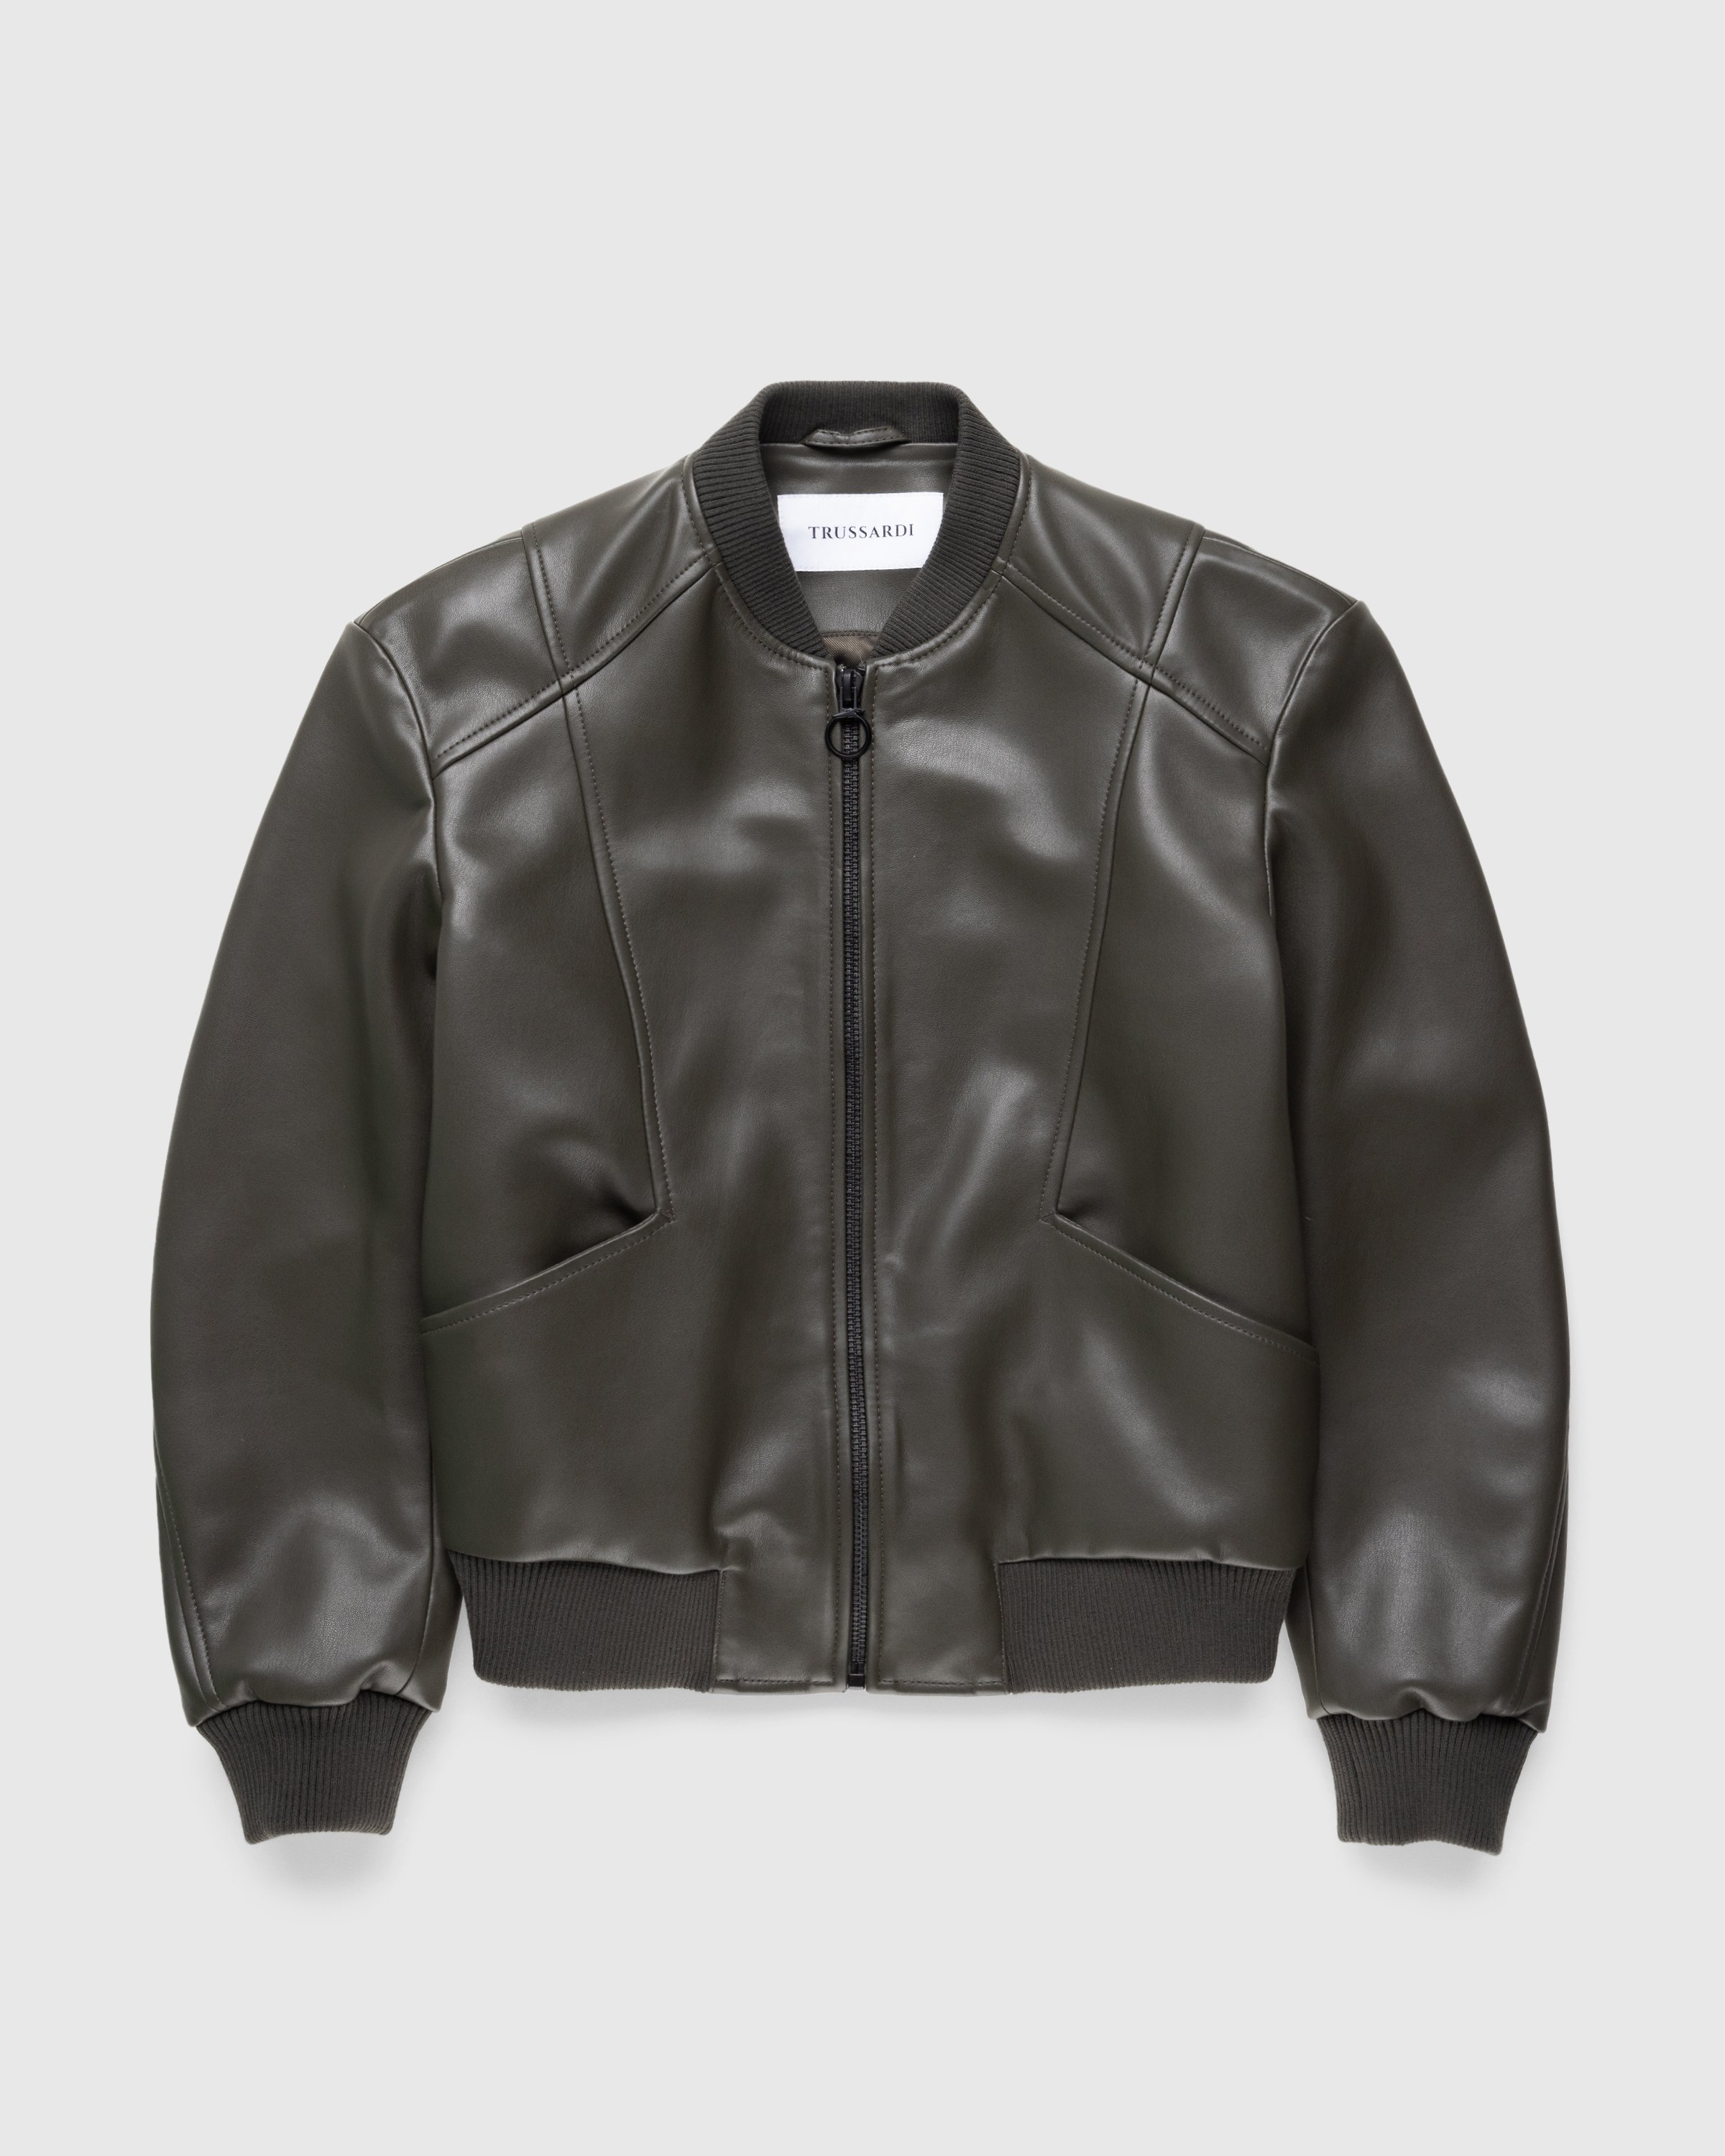 Trussardi - Jacket Faux Leather Bonded - Clothing - Green - Image 1